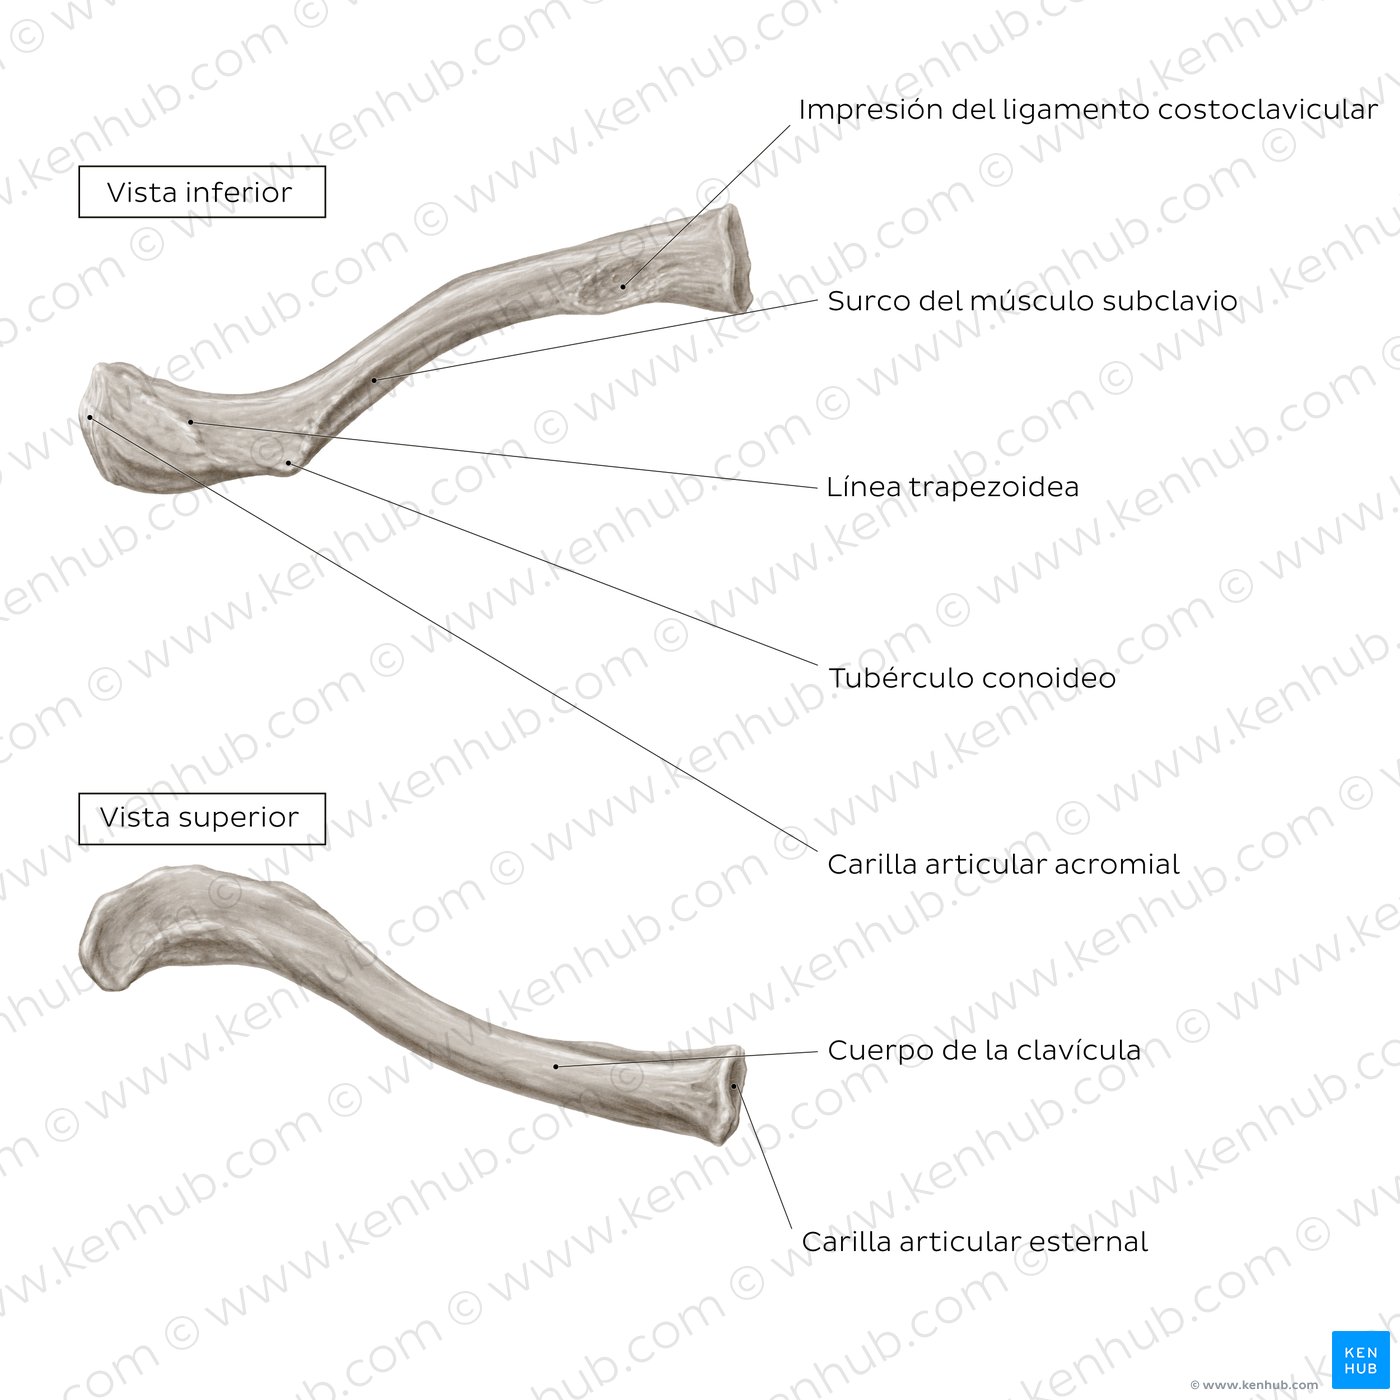 Anatomía de la clavícula